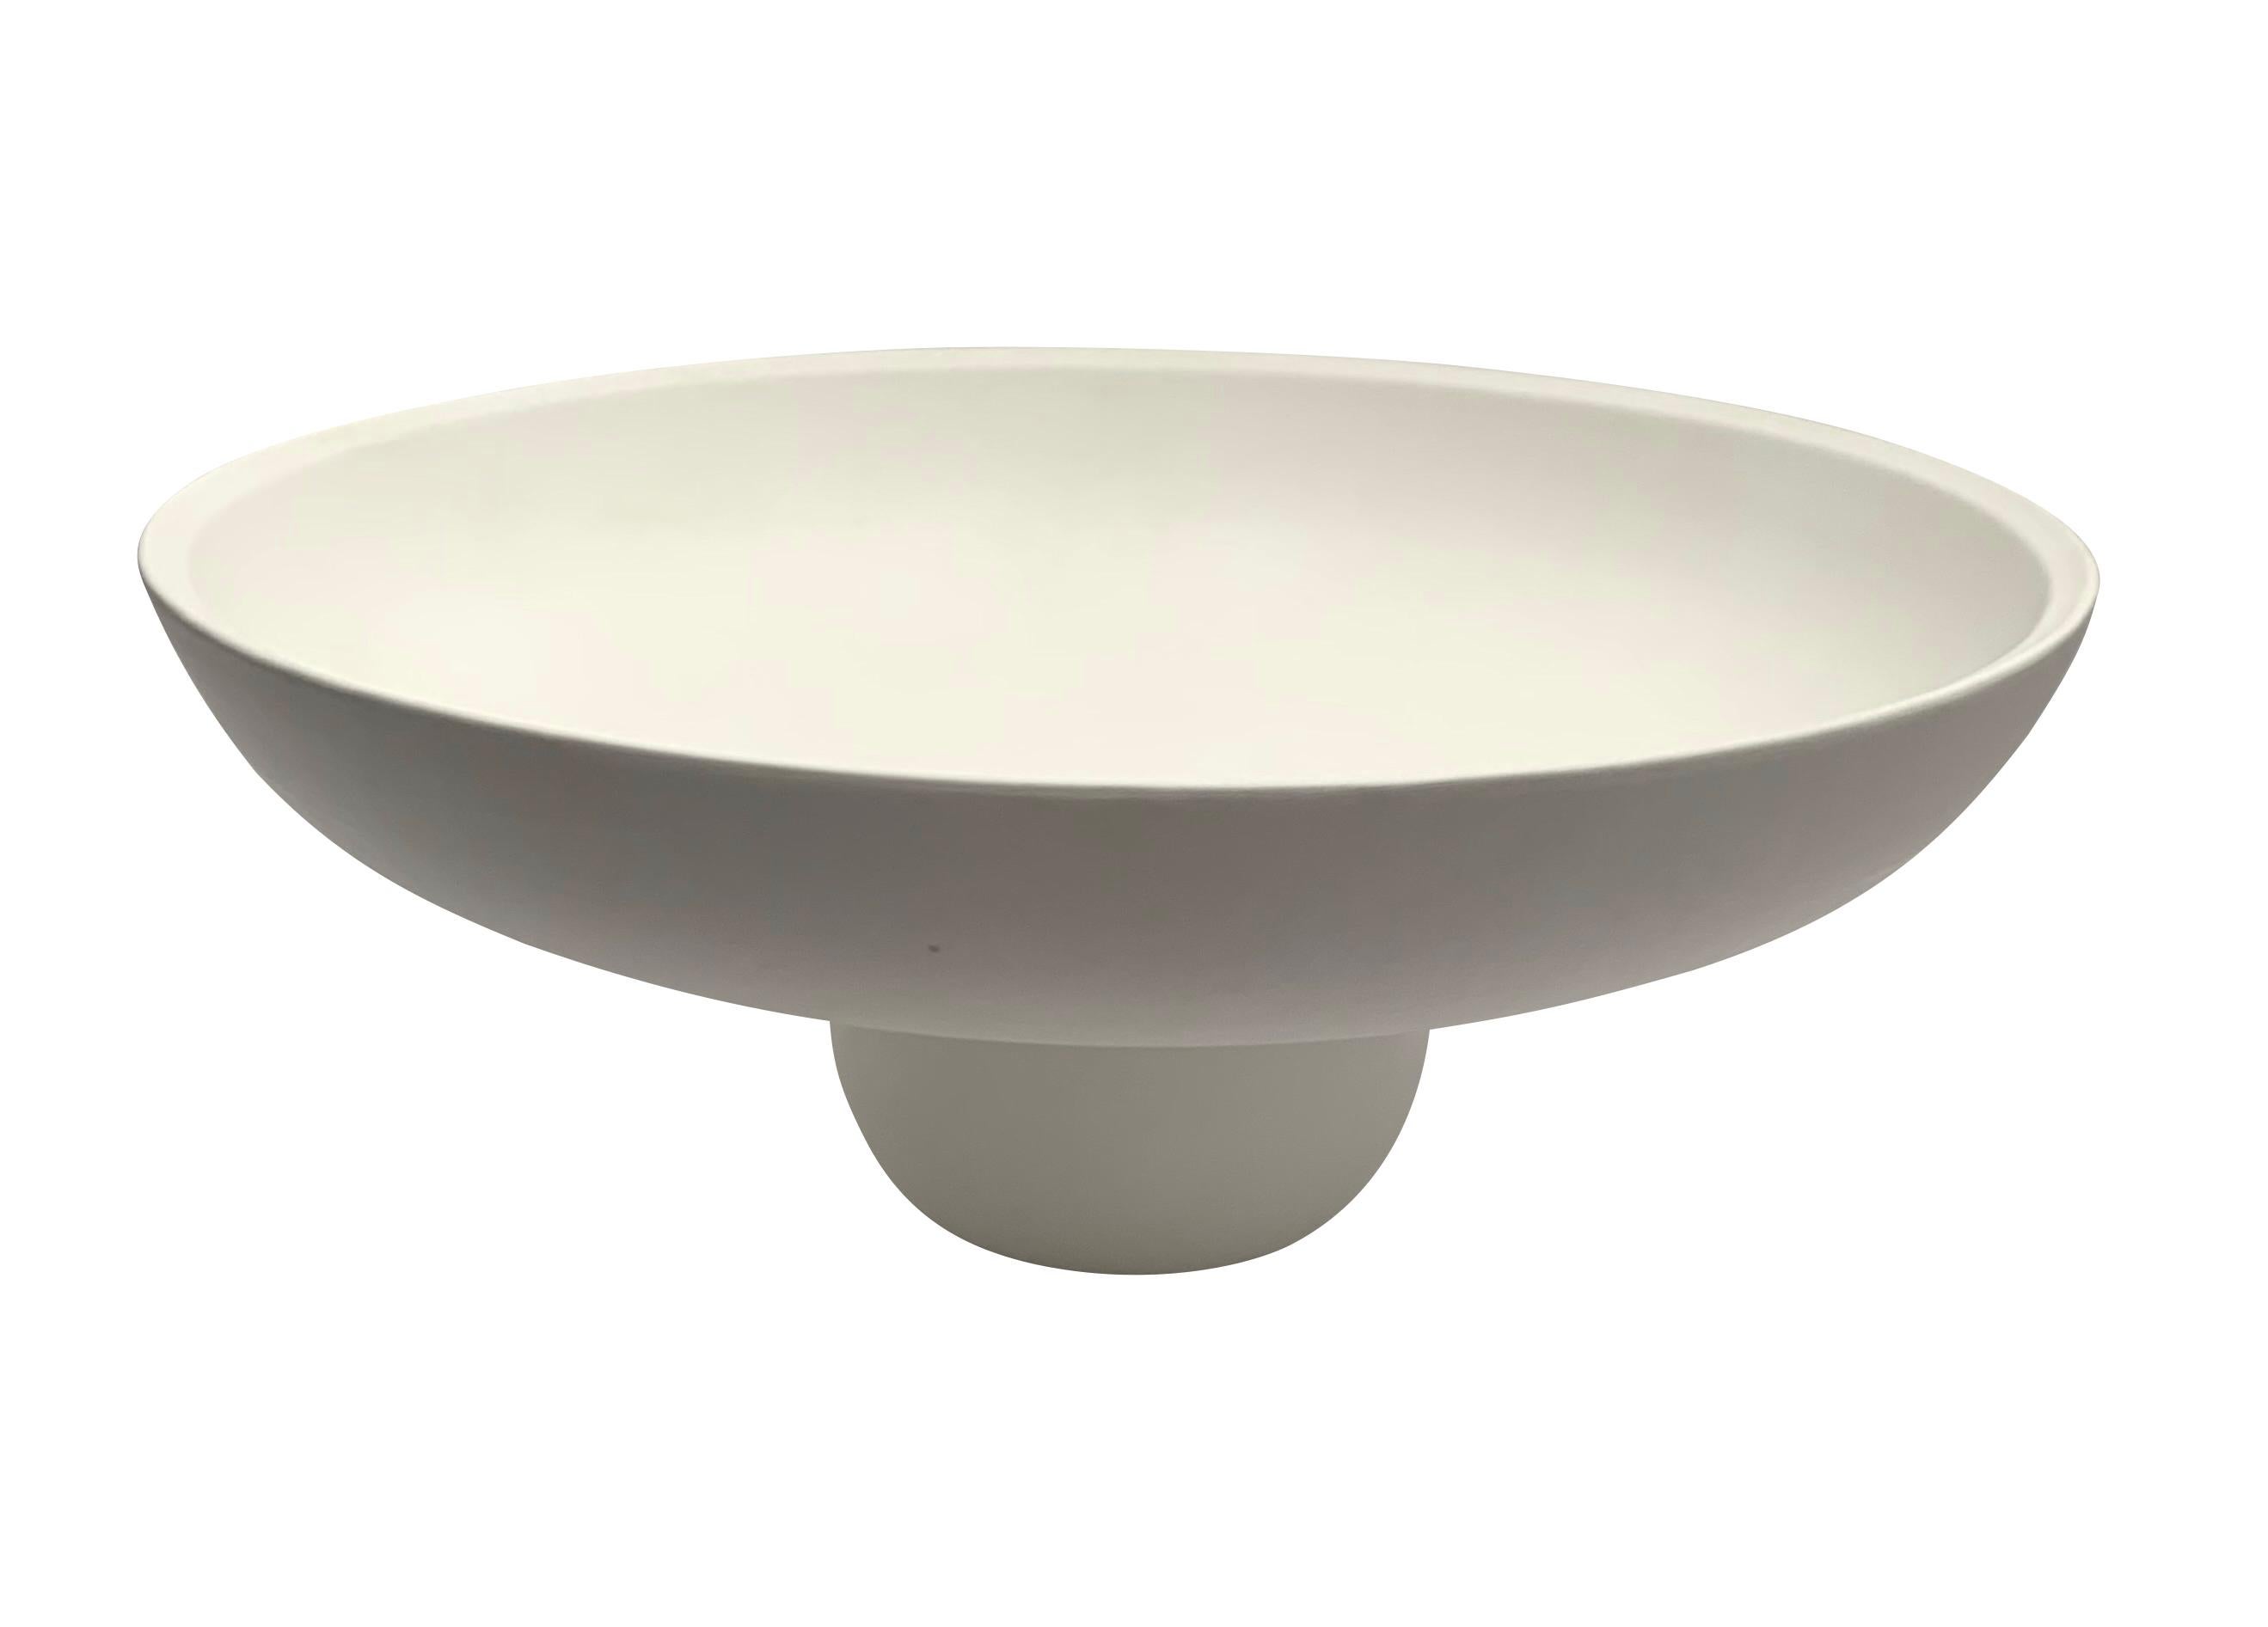 Grand bol rond contemporain en céramique blanche sur pied, de conception danoise.
La base est en forme de cylindre.
